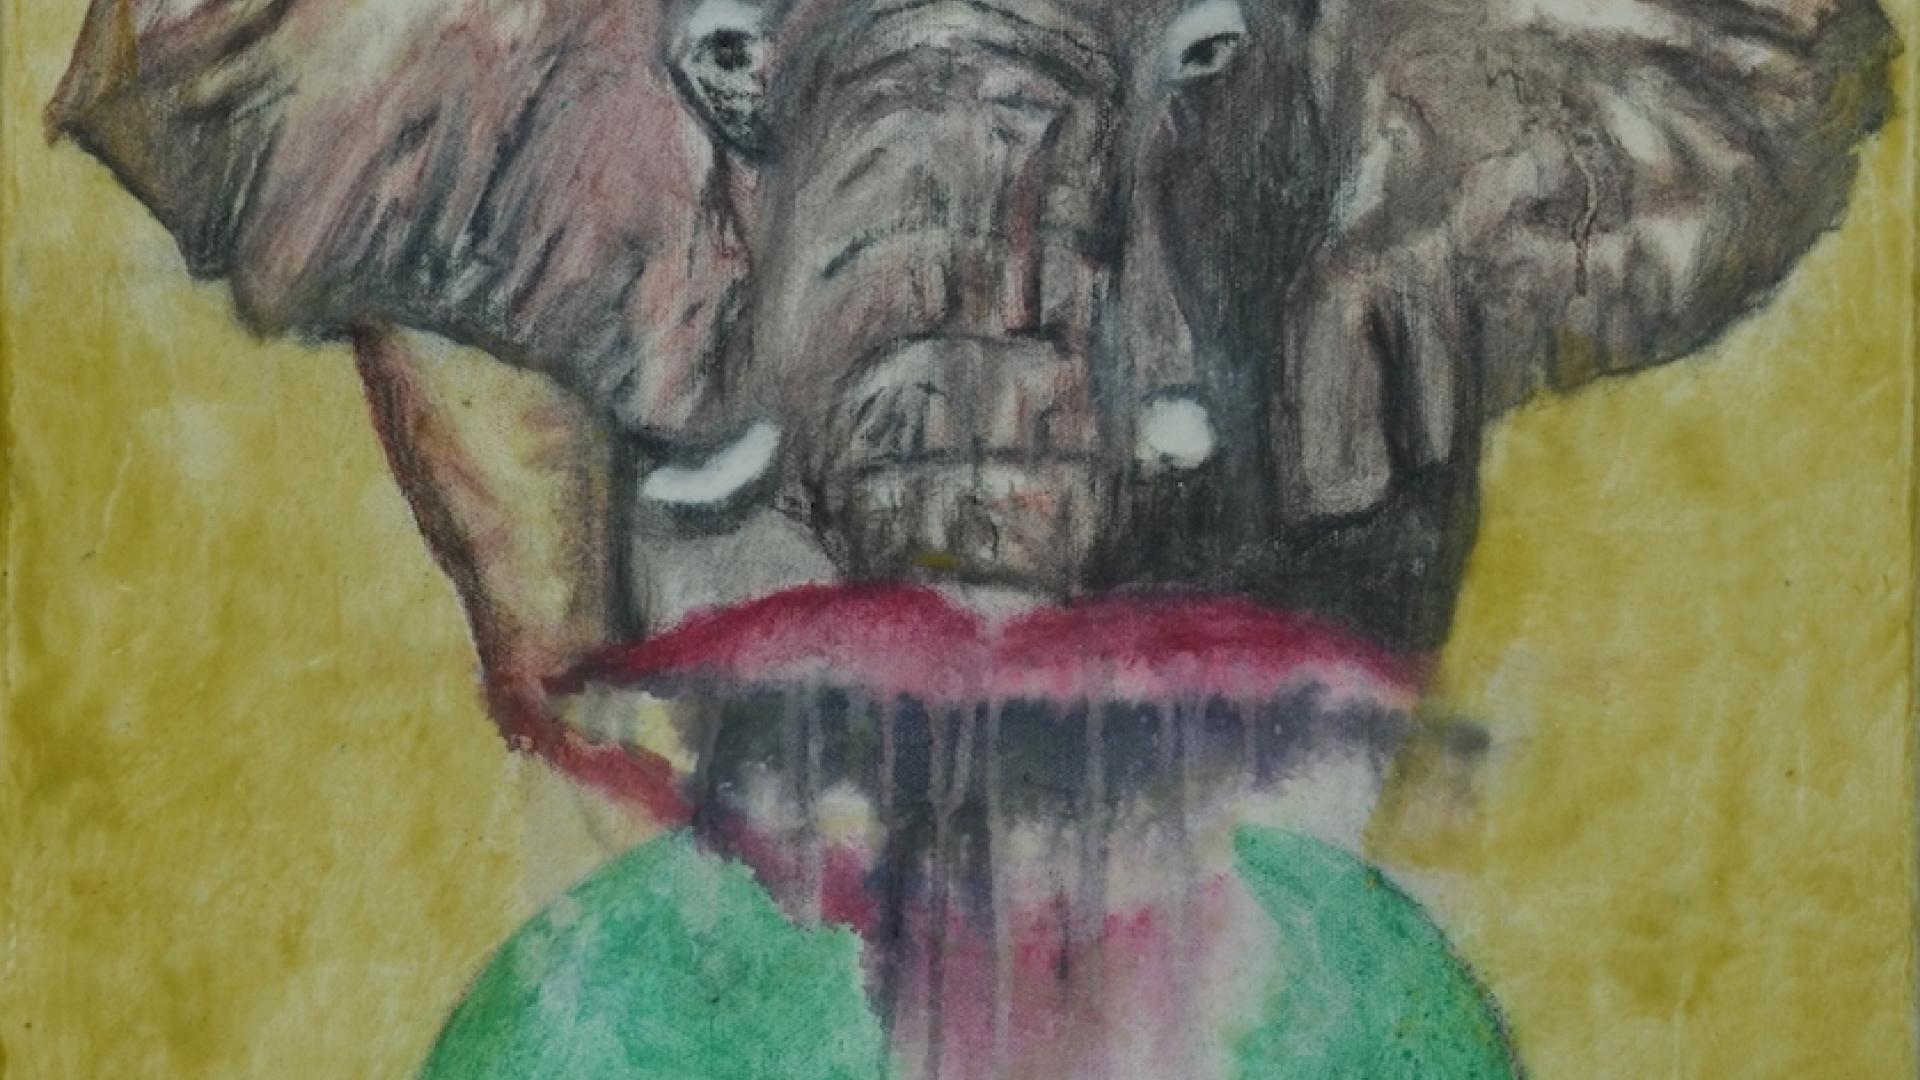 Die Lippen des Elefanten, 2017, Eitempera und Enkaustik auf Leinwand, 60 x 50 cm